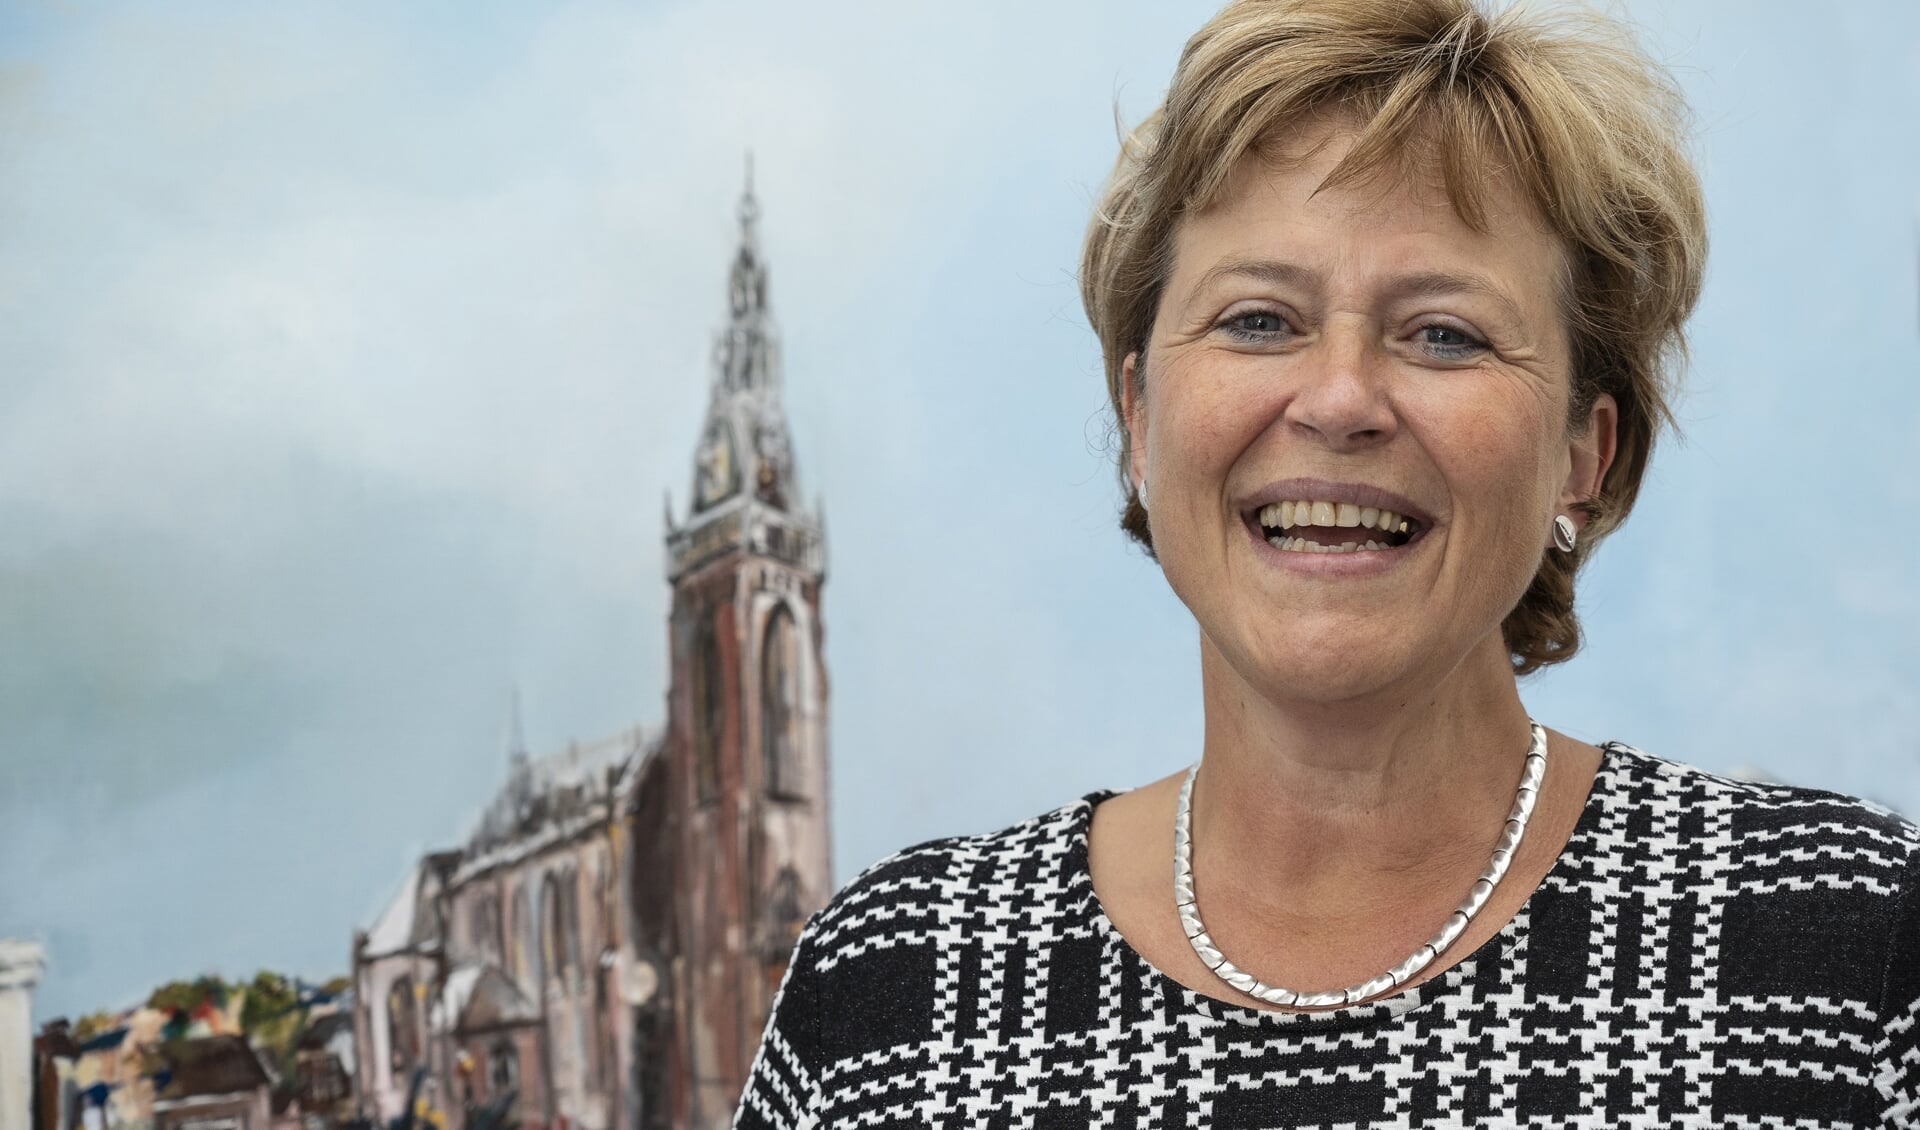 Burgemeester van Kampen vindt het instellen van een avondklok zinloos.